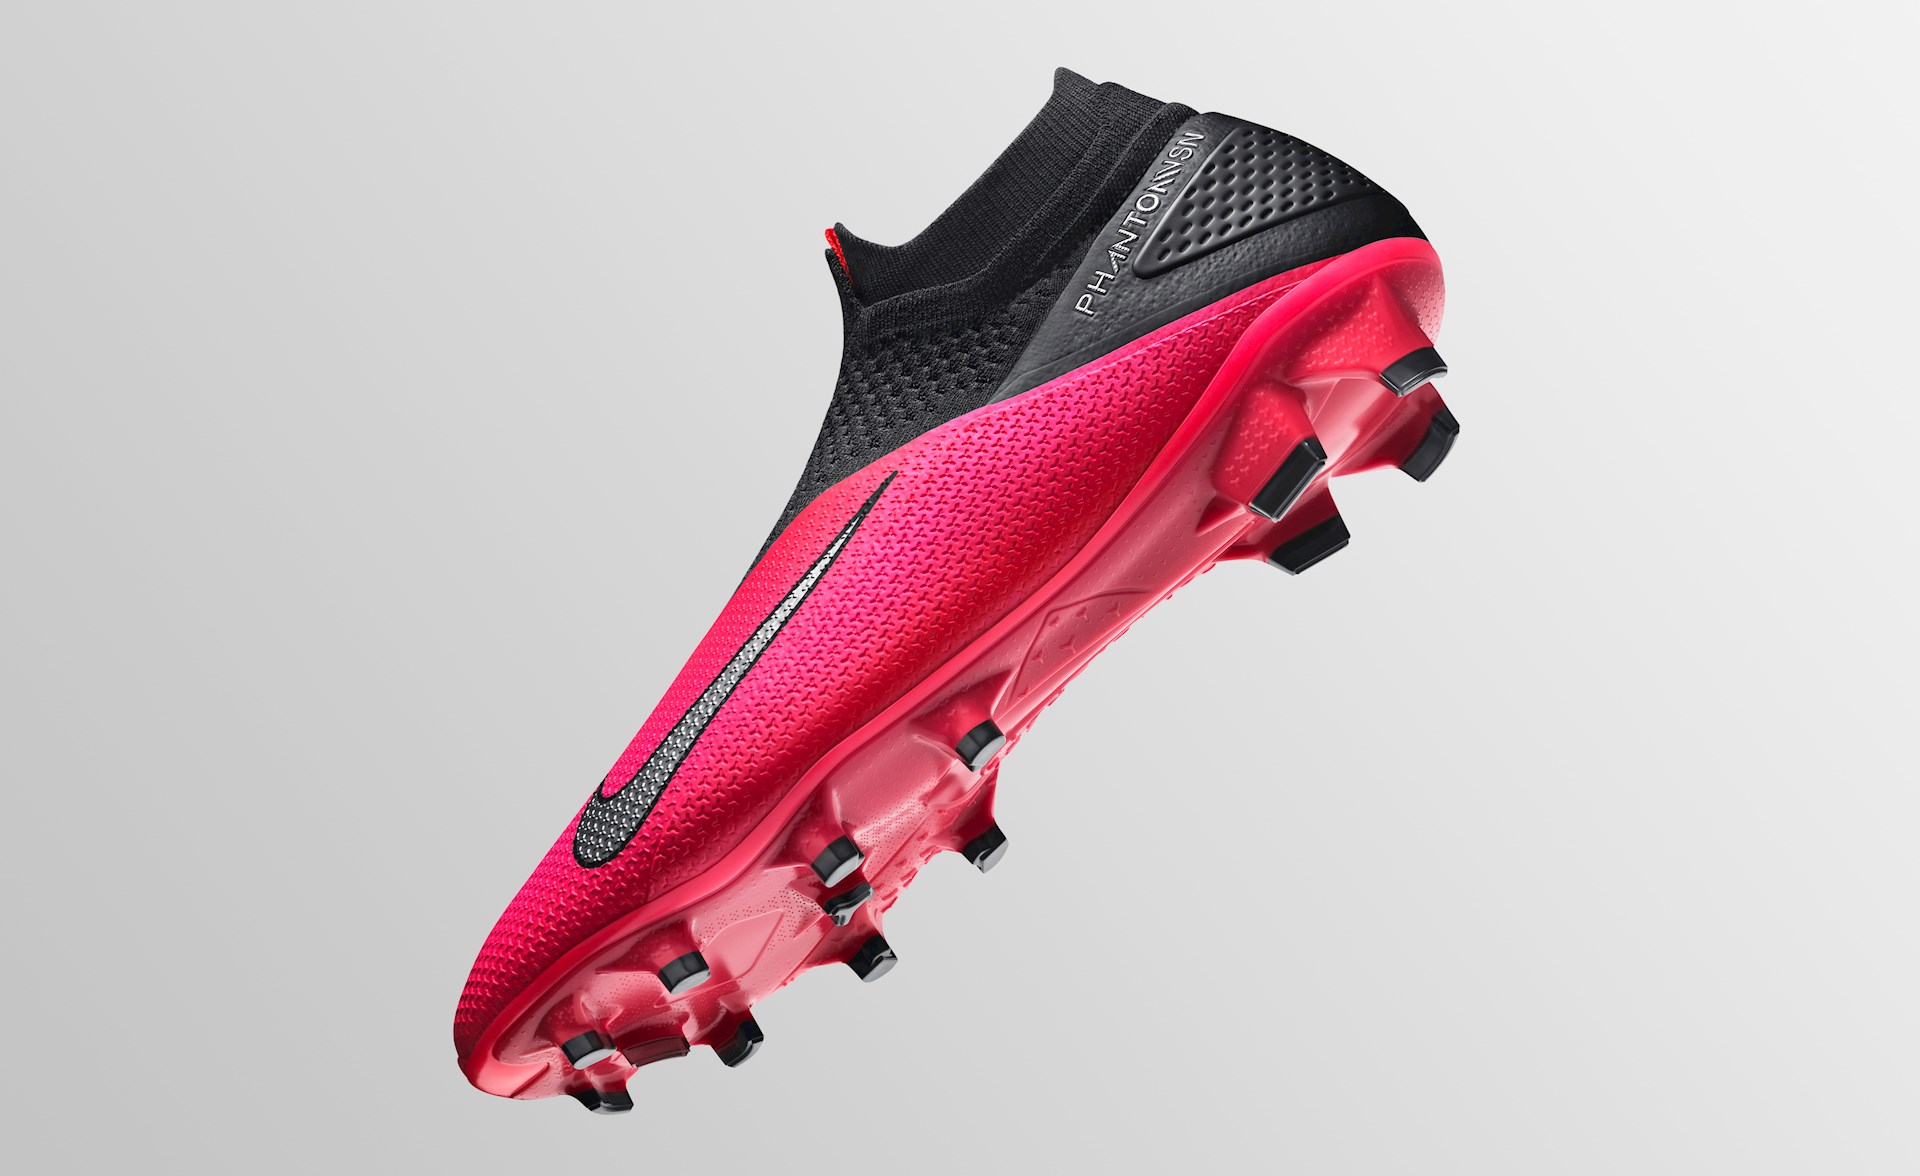 Necklet gemak Geduld Alle kenmerken van de Nike Phantom VSN II voetbalschoenen - Voetbal-schoenen .eu